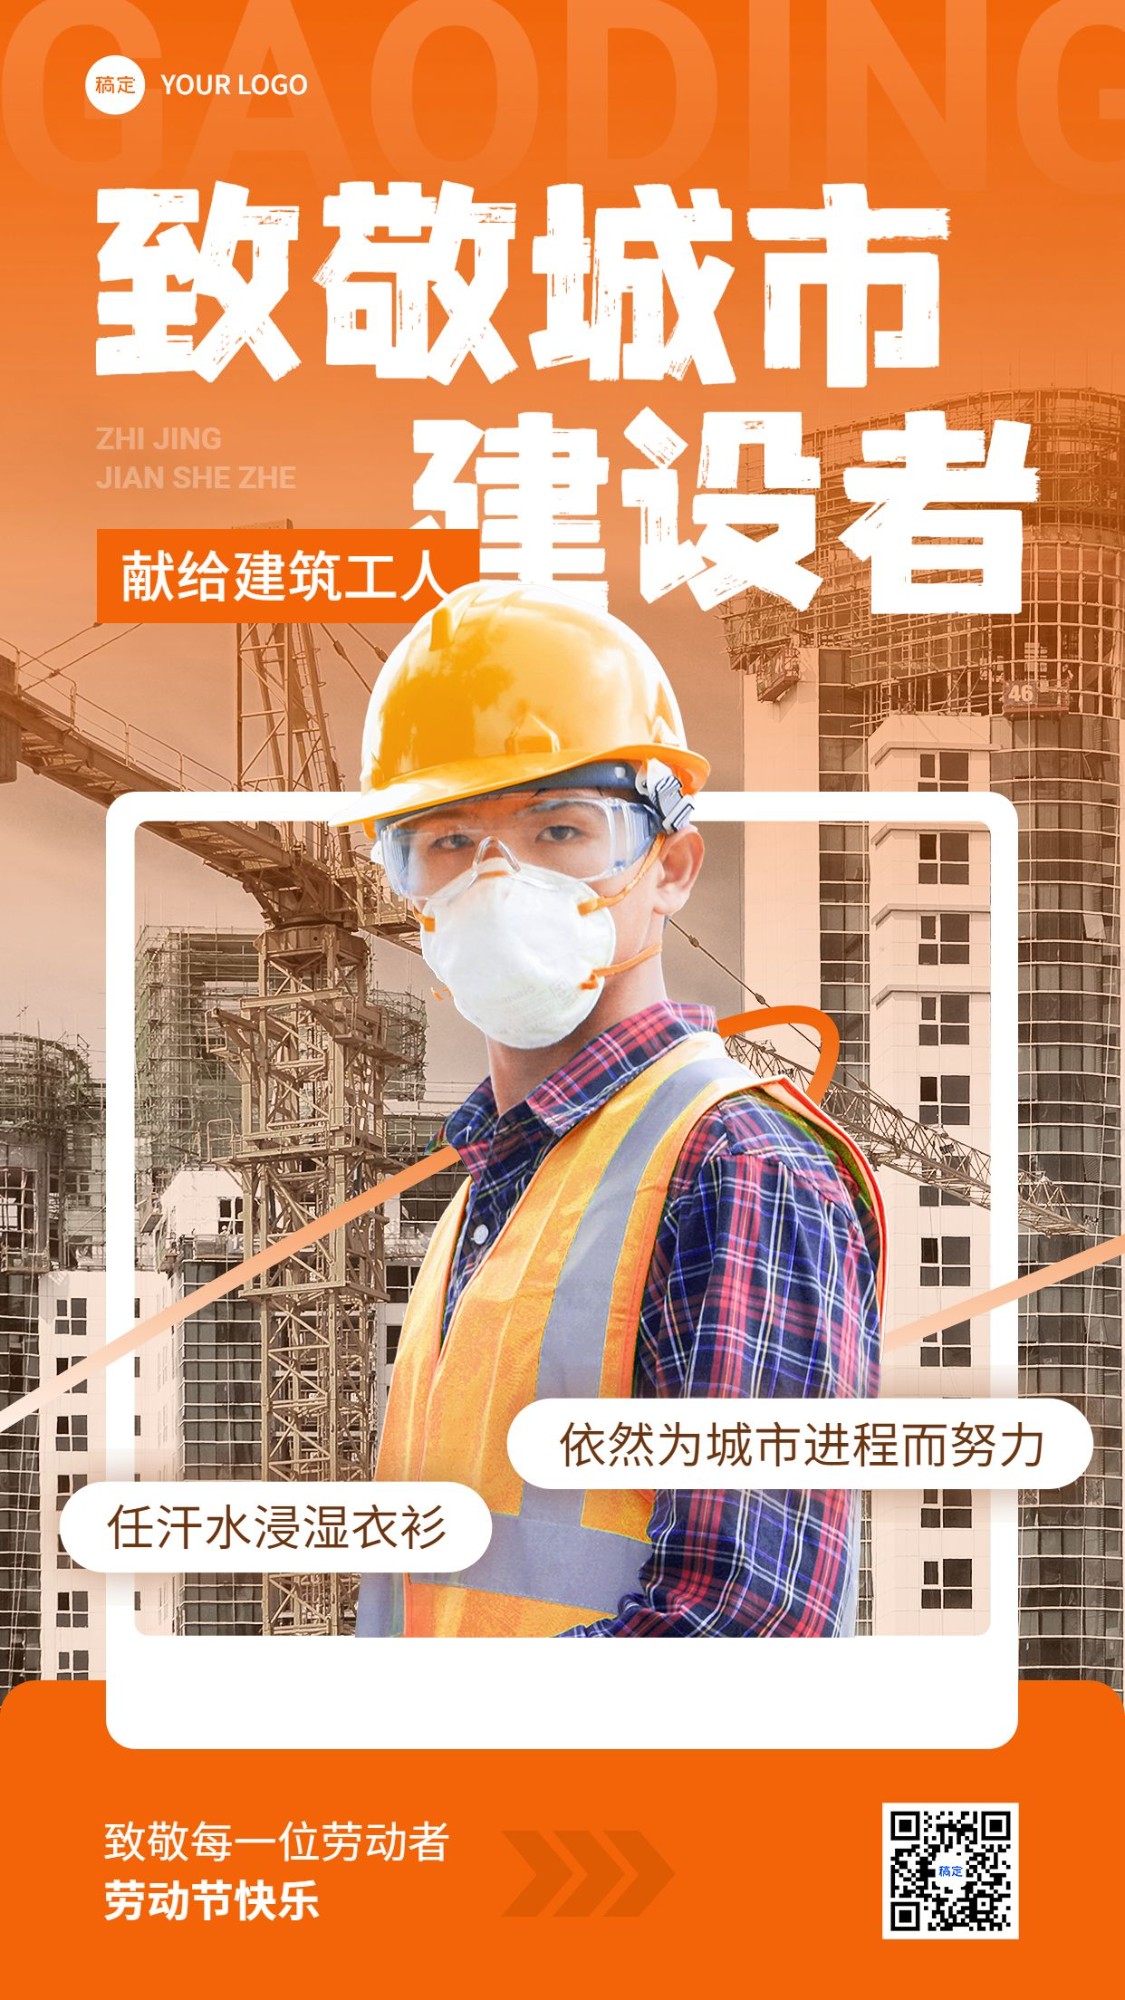 企业五一劳动节节日致敬劳动者创意合成手机海报